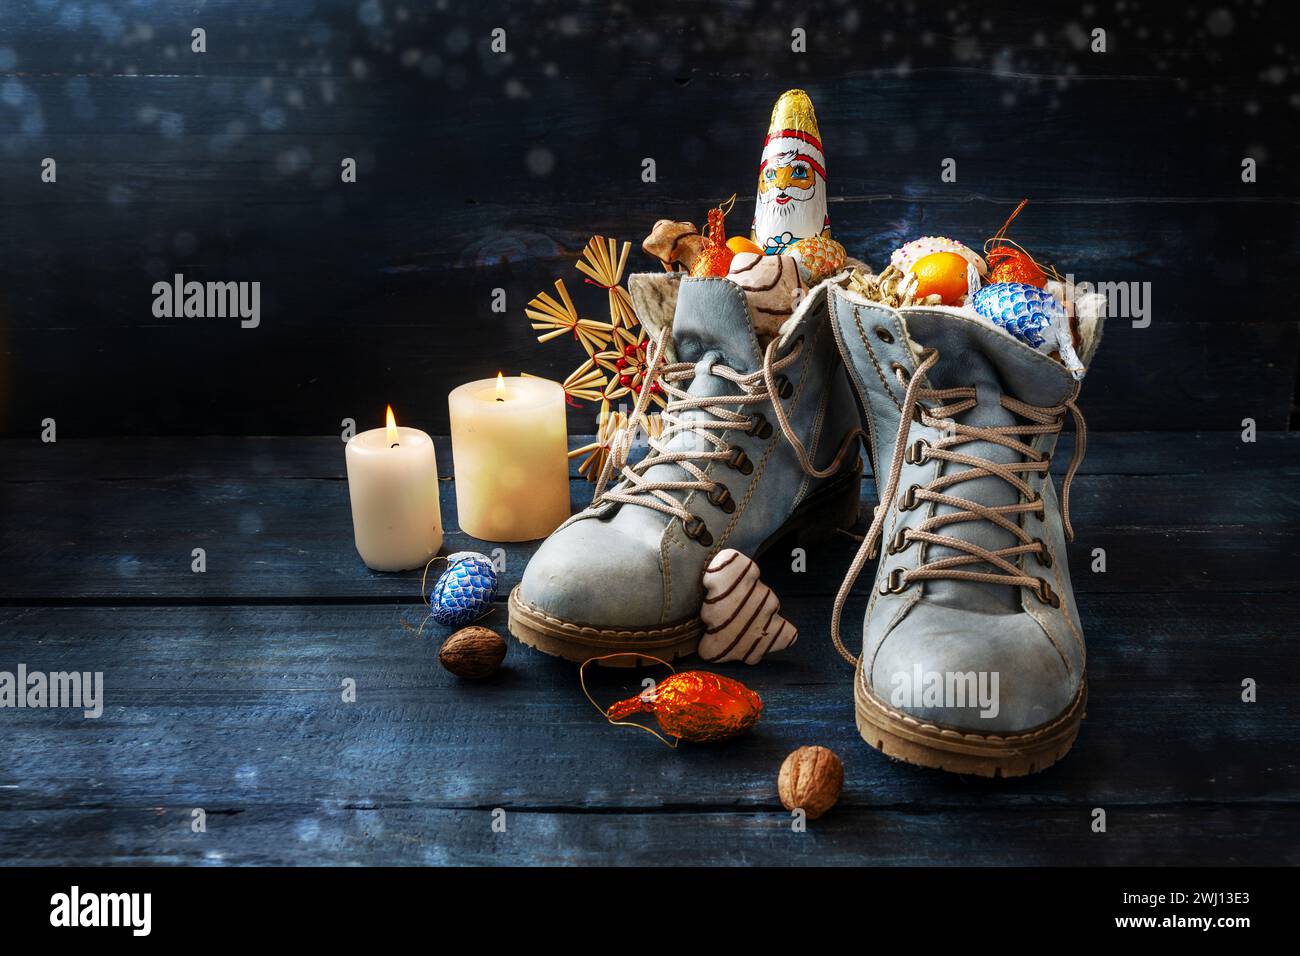 Tradition sur l'allemand Nikolaus Tag signifiant Nicholas jour, les chaussures sont remplies de friandises, ici des bottes avec des bonbons et décora de Noël Banque D'Images